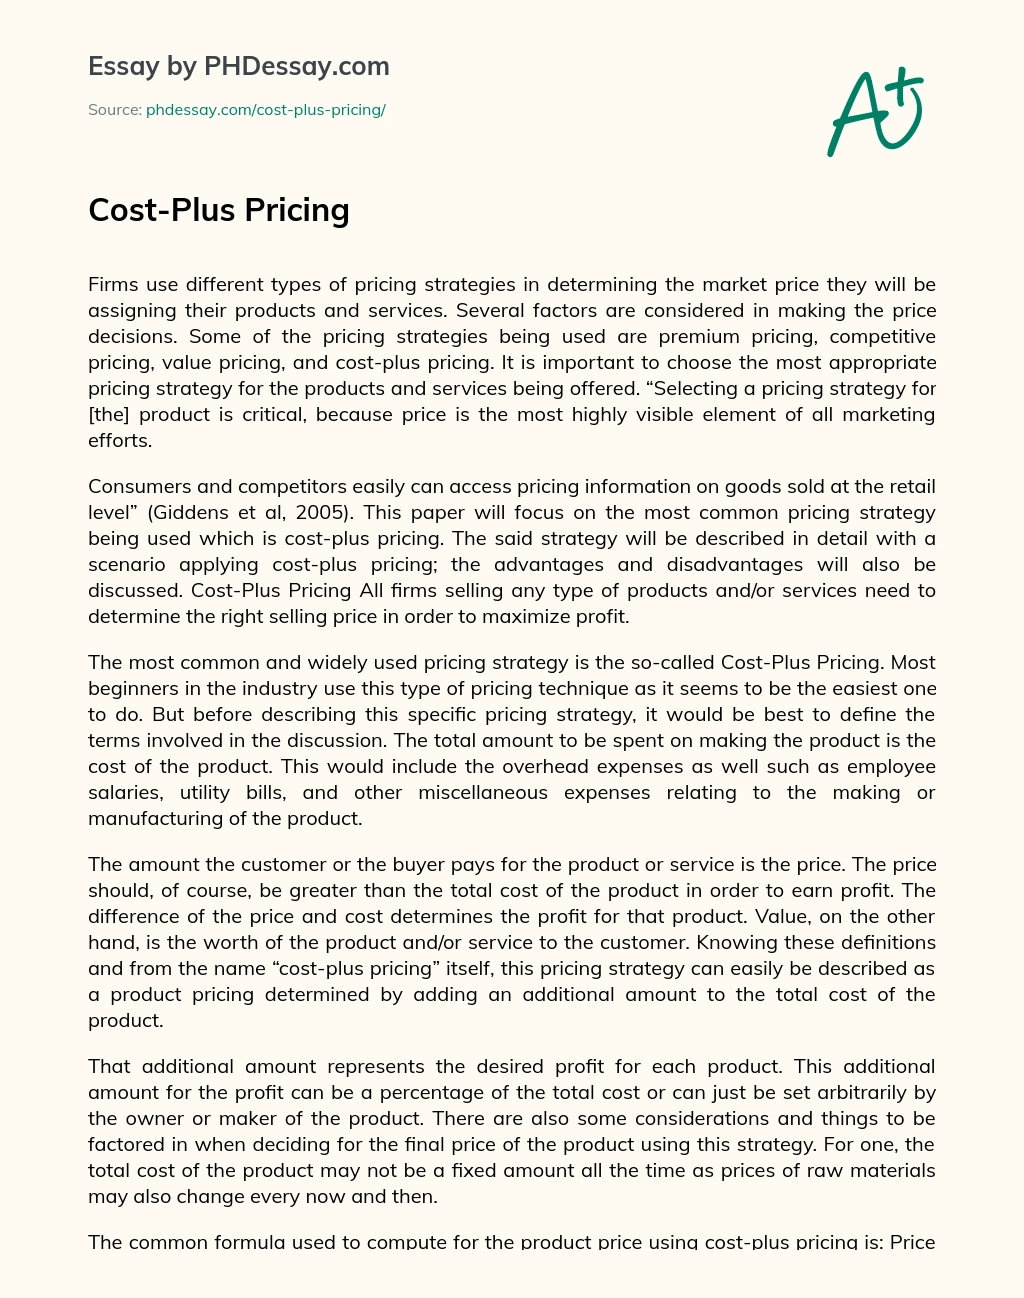 Cost-Plus Pricing essay